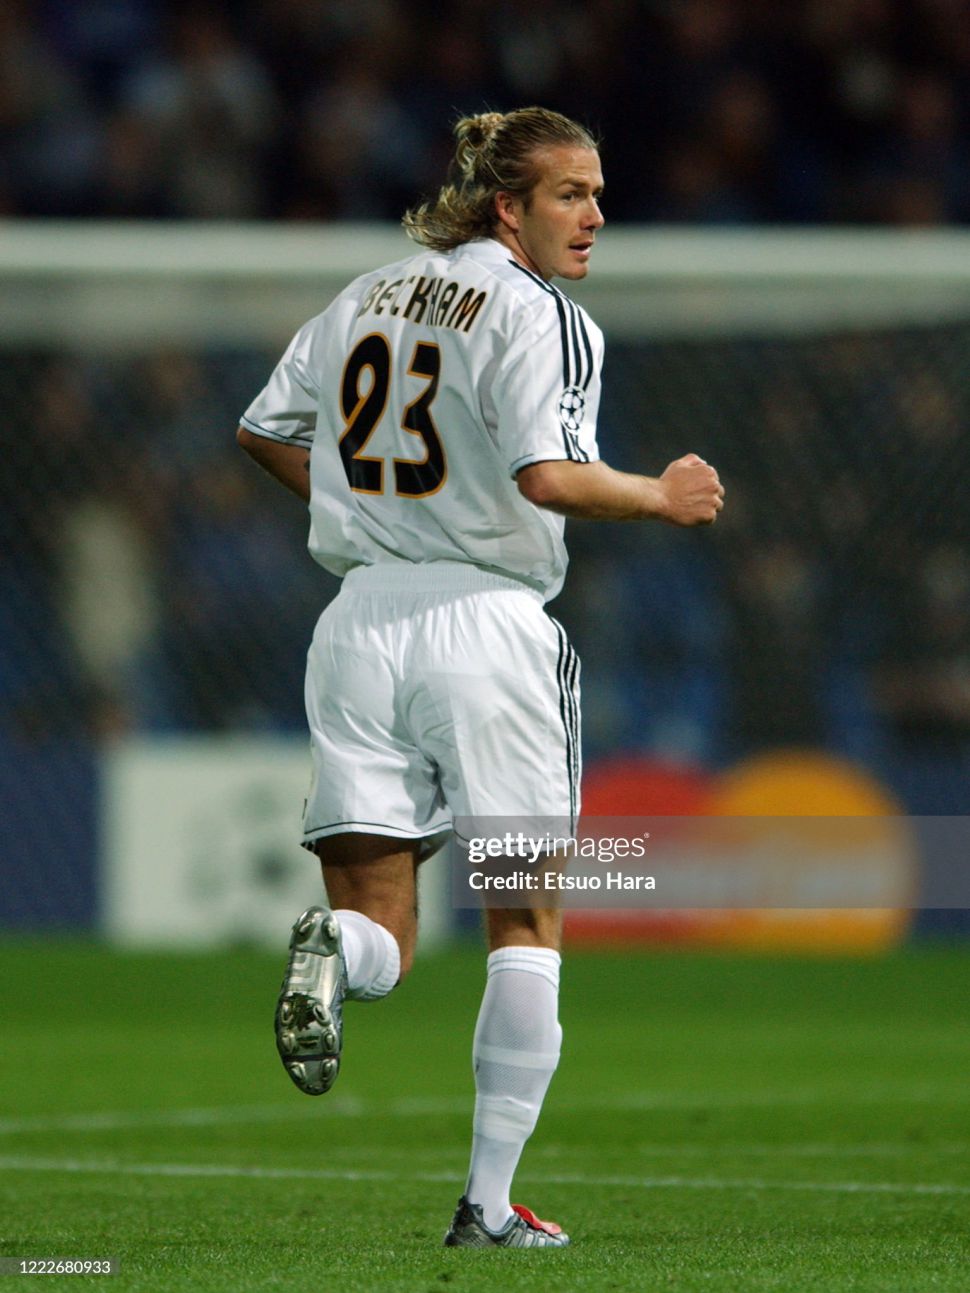 Áo đấu Beckham 23 Real Madrid 2003-2004 home shirt jersey white 021804